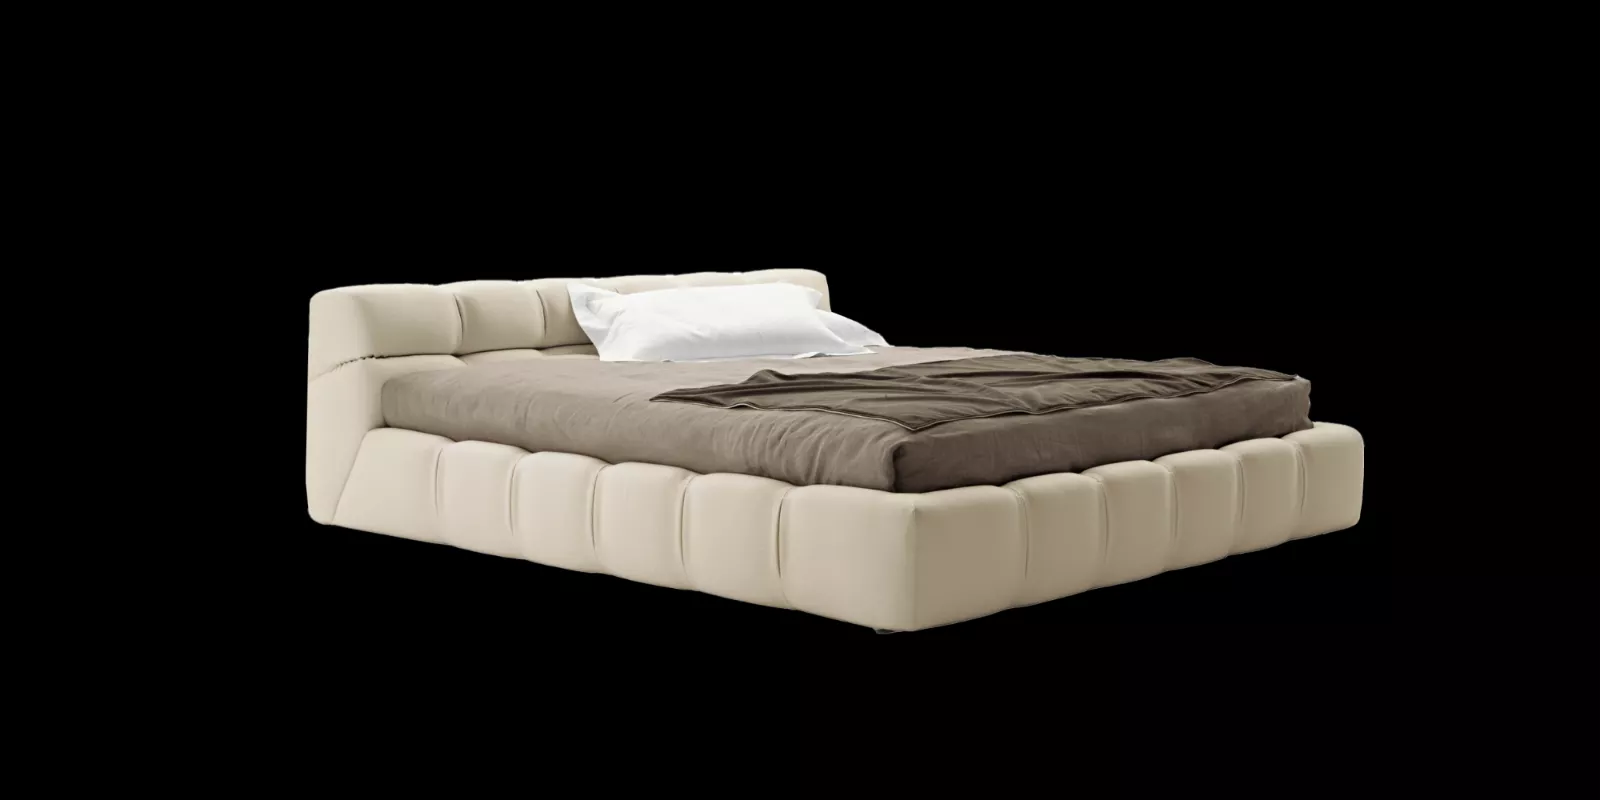 訂製復刻床台B&B_Tufty-Beds